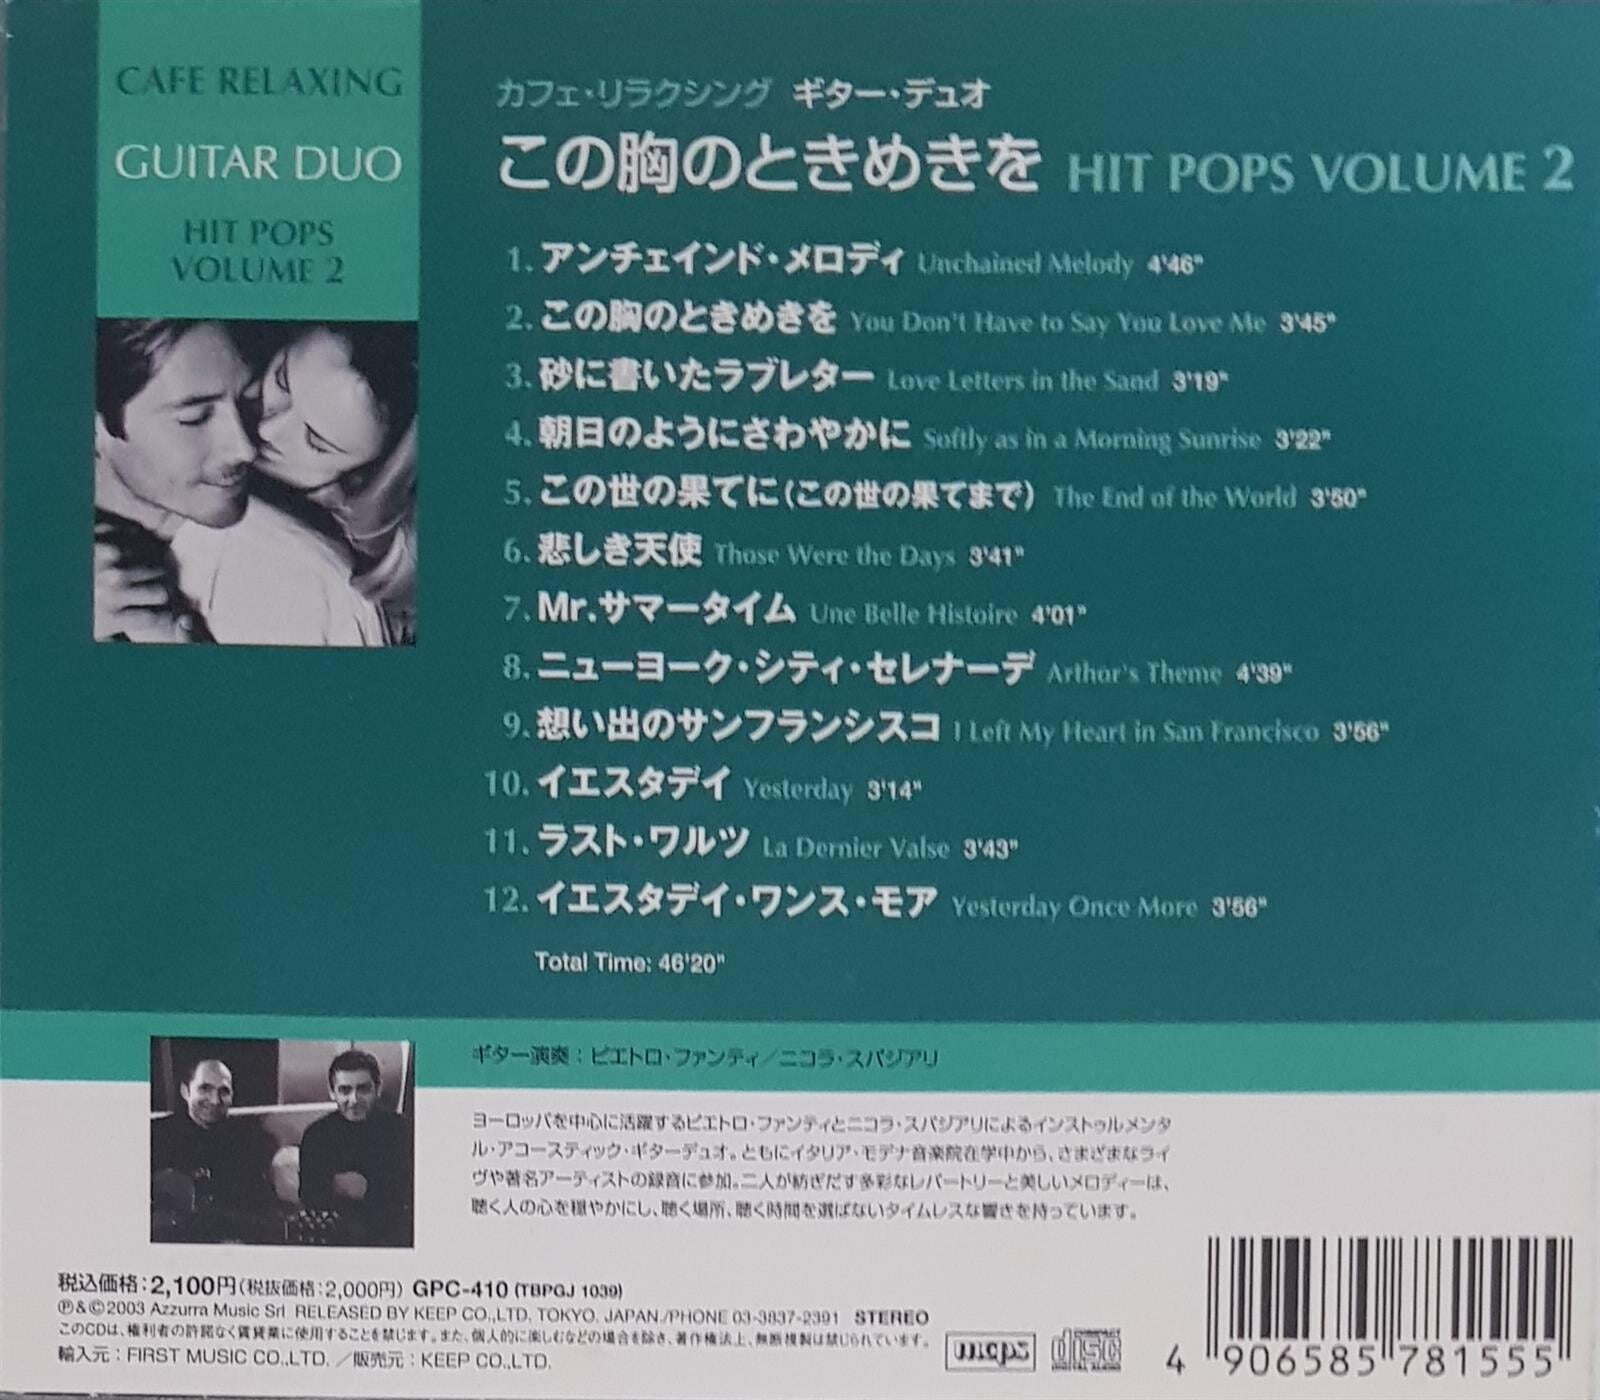 [수입][CD] Pietro Fanti, Nicola Spaggiari - Cafe Relaxing Guitar Duo: Hit Pops Volume 2